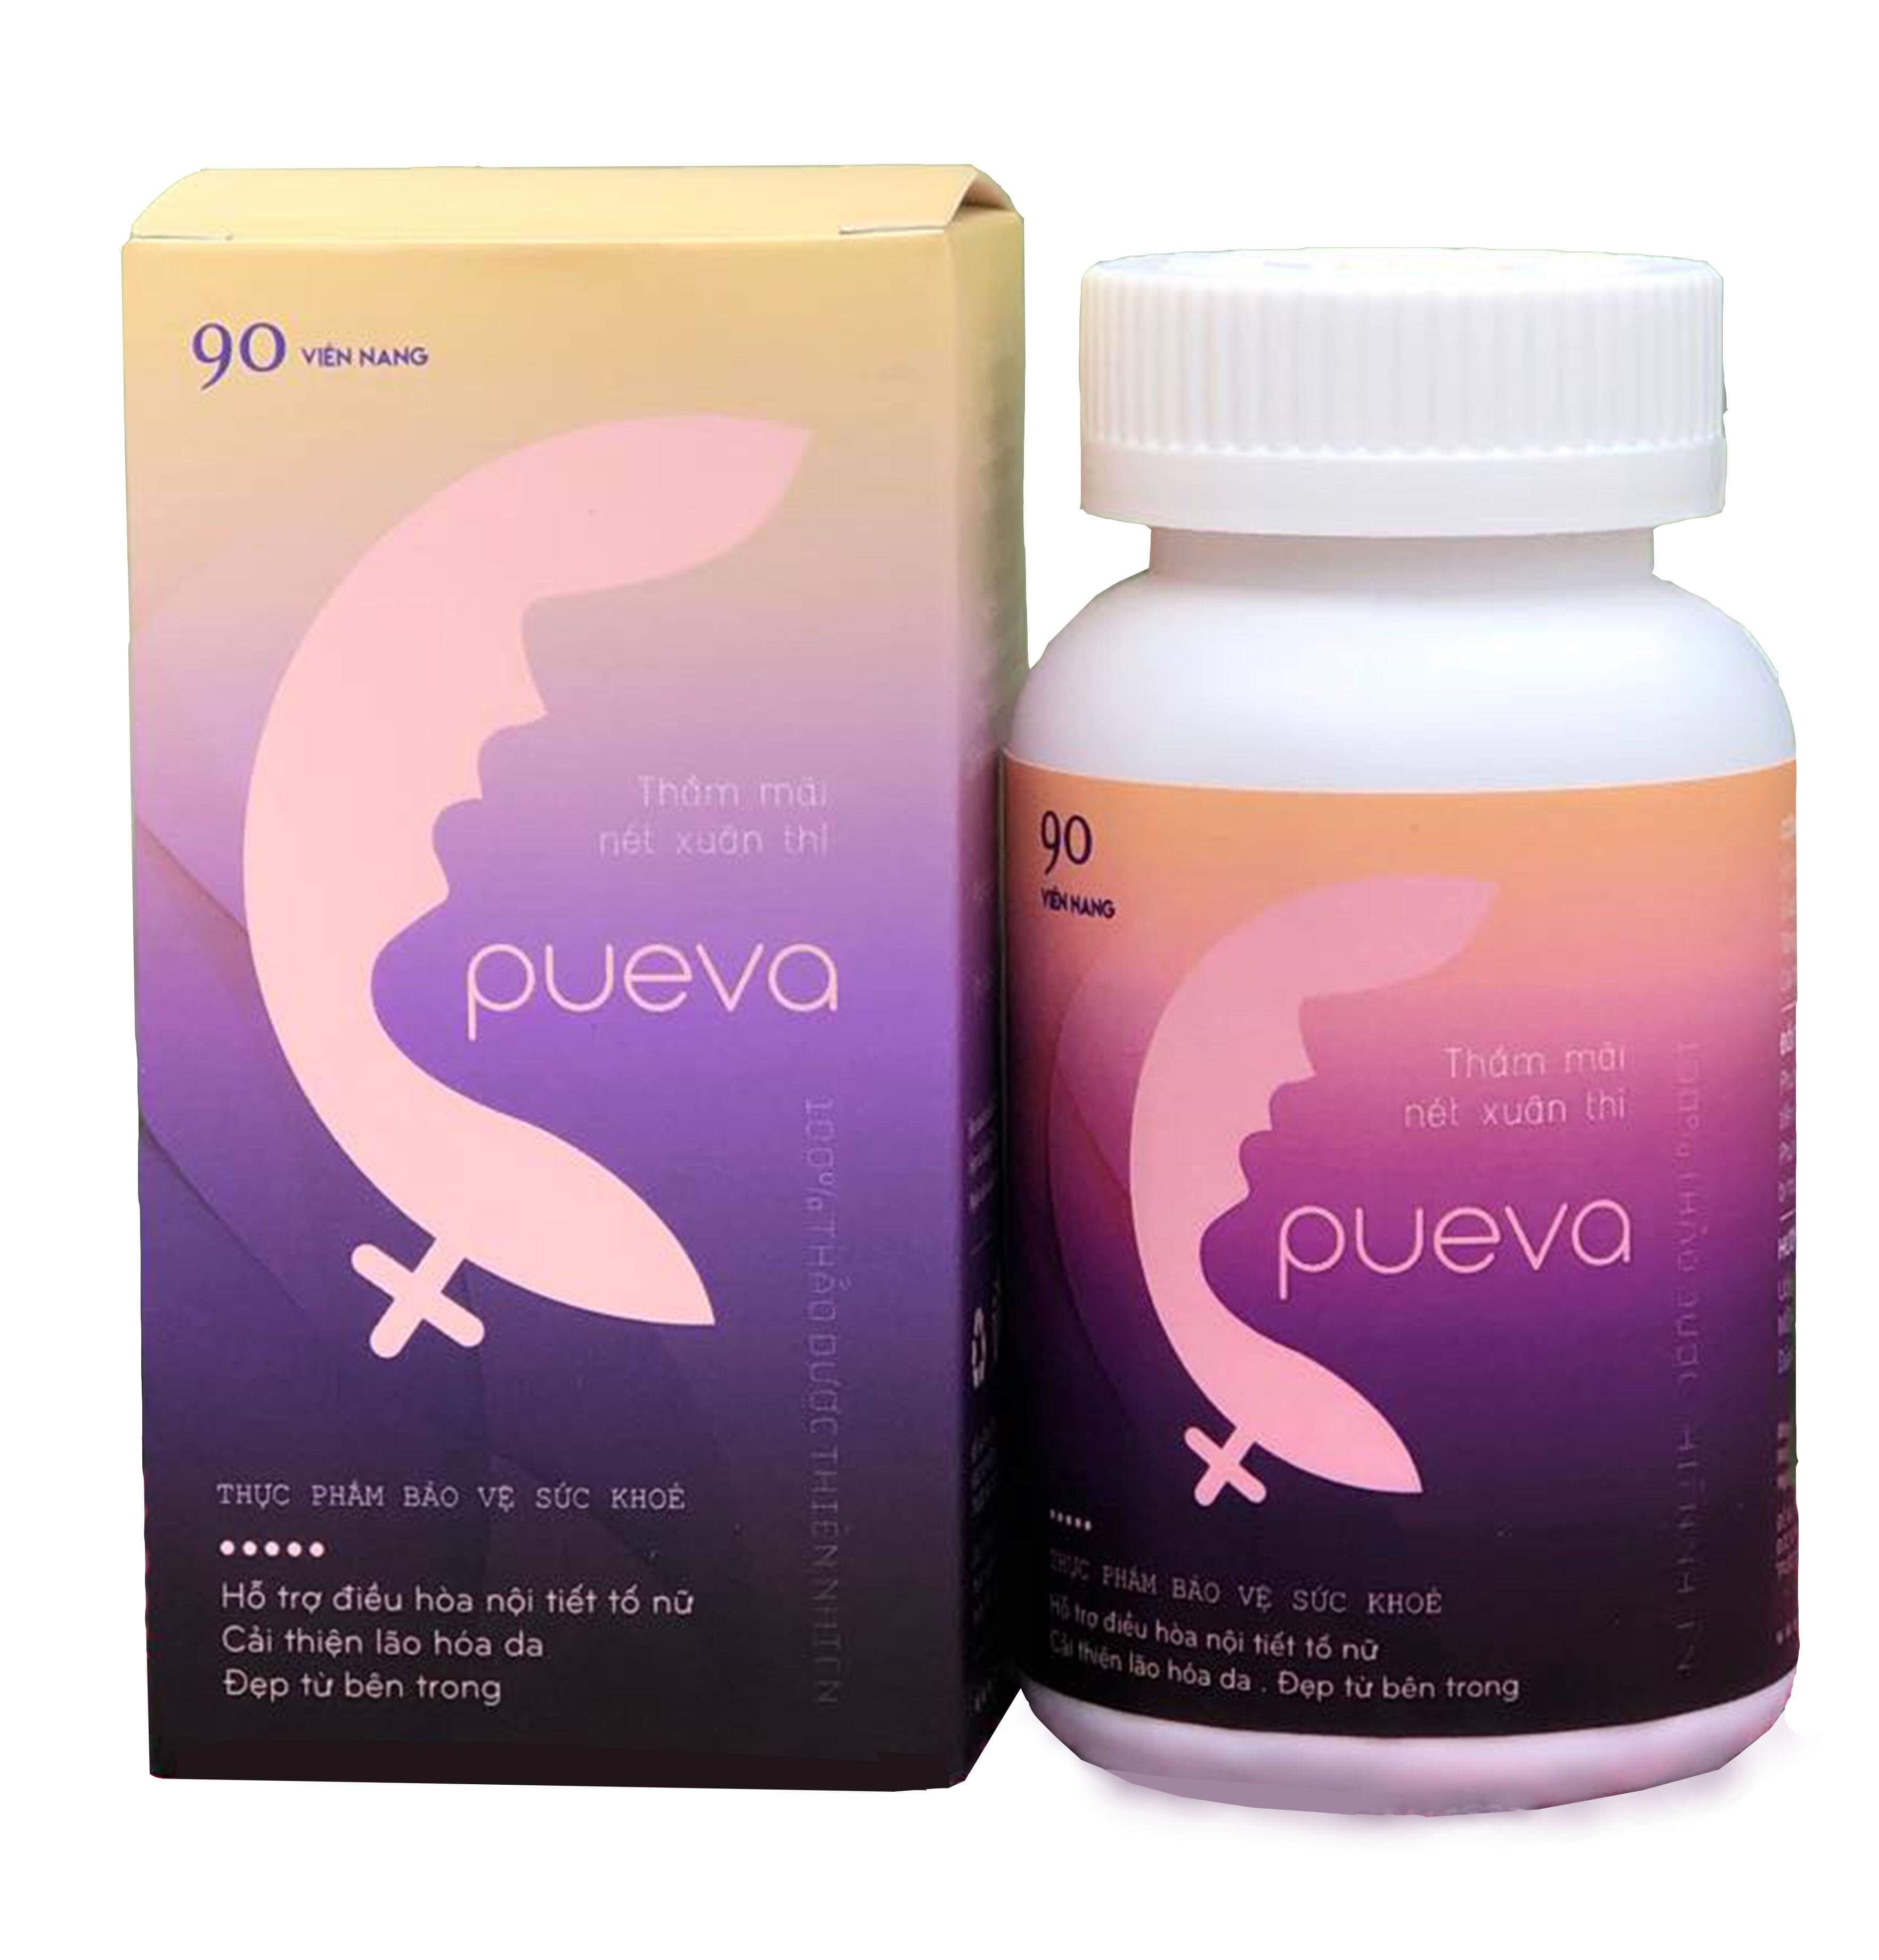 PUEVA – Giải pháp điều hòa nội tiết tố nữ tự nhiên tối ưu - Ảnh 2